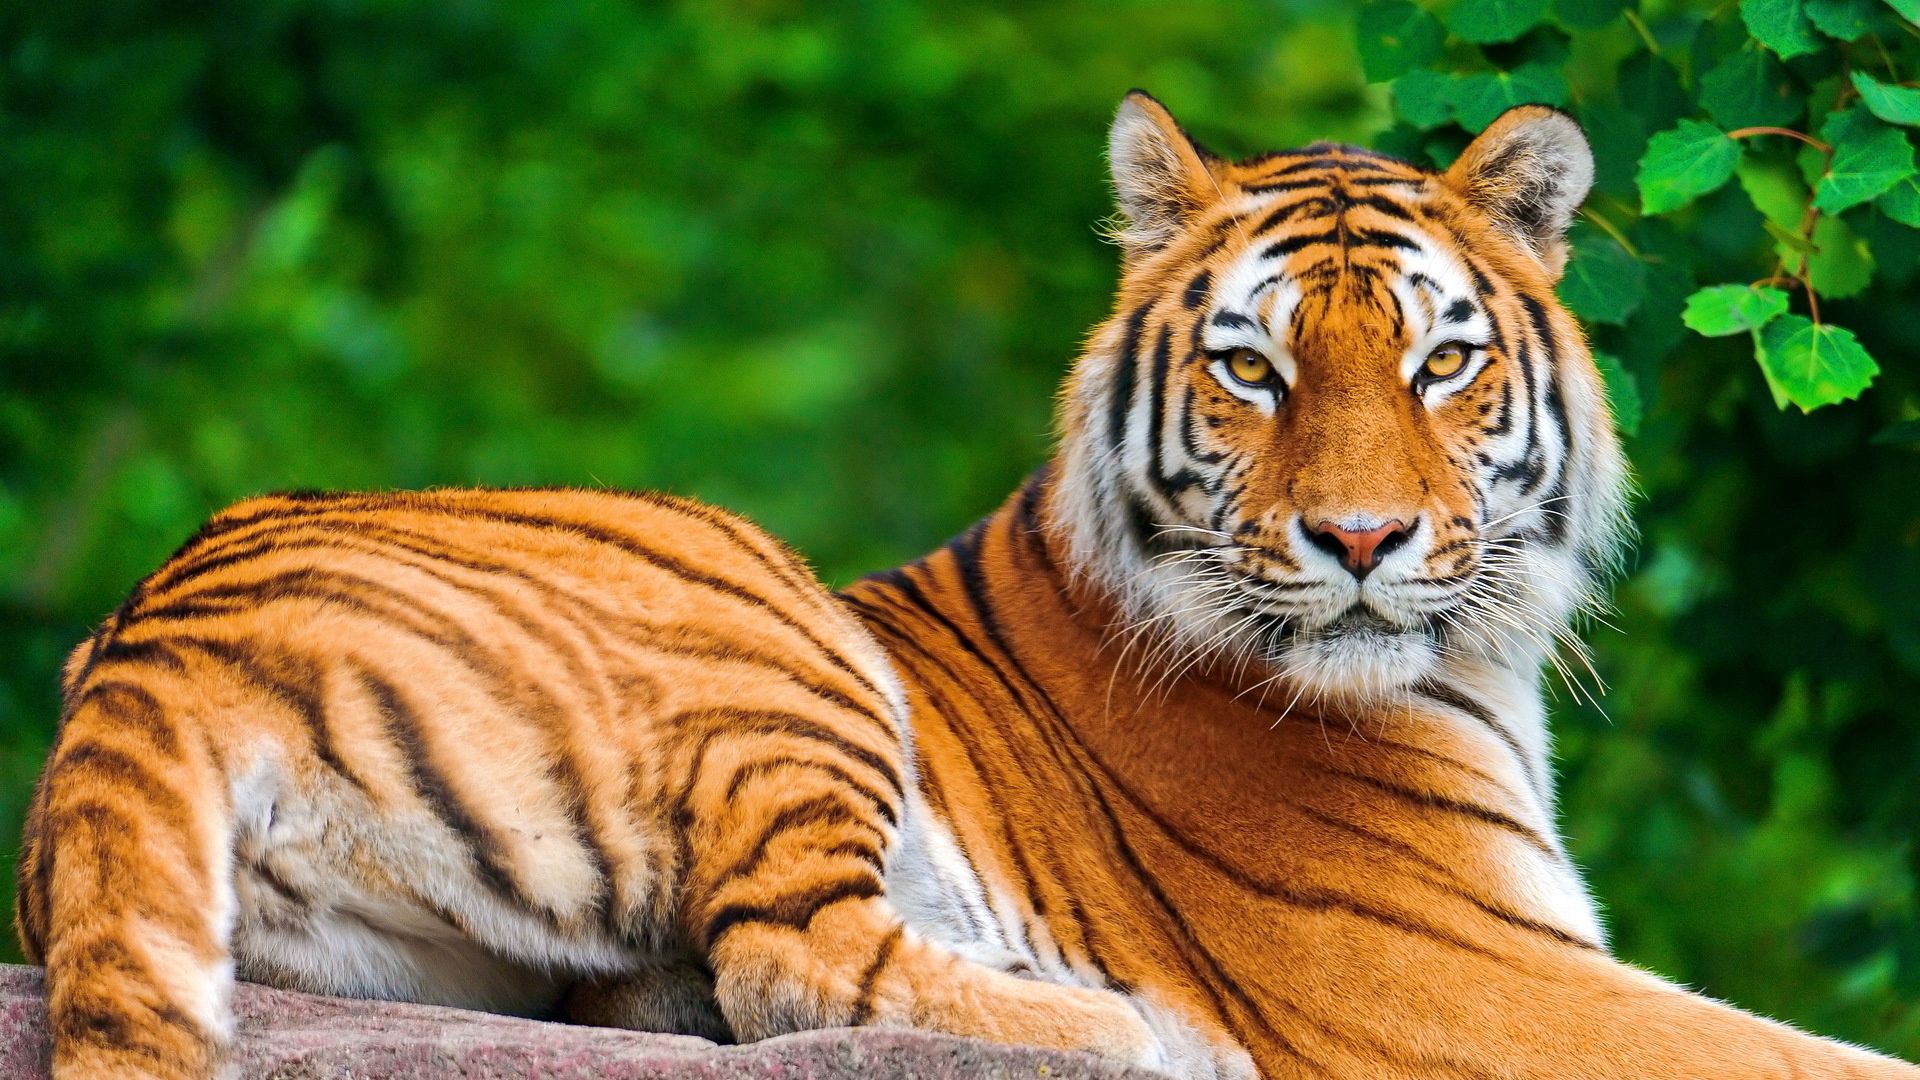 Descarga gratis la imagen Gato Grande, Visión, Depredador, Opinión, Tigre, Animales en el escritorio de tu PC